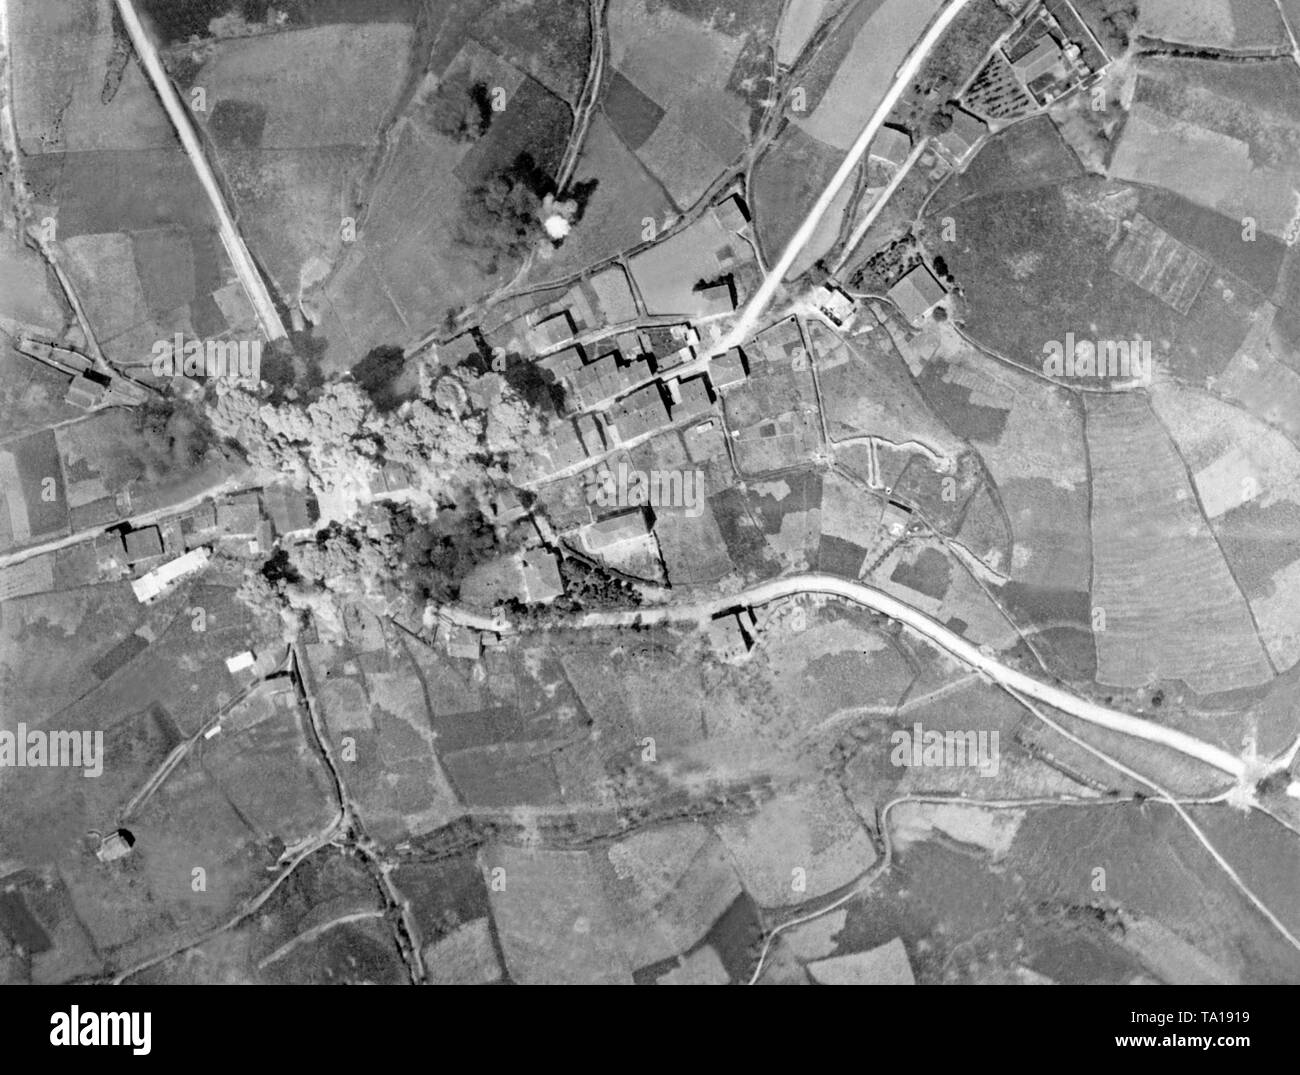 Vista aerea di un attentato alla bomba dalla Forza Aerea Italiana del Corpo truppe volontarie (CTV) su un villaggio nella guerra civile spagnola. Nella foto, gli impatti e il fumo e nuvole di polvere dell'attacco. Foto Stock